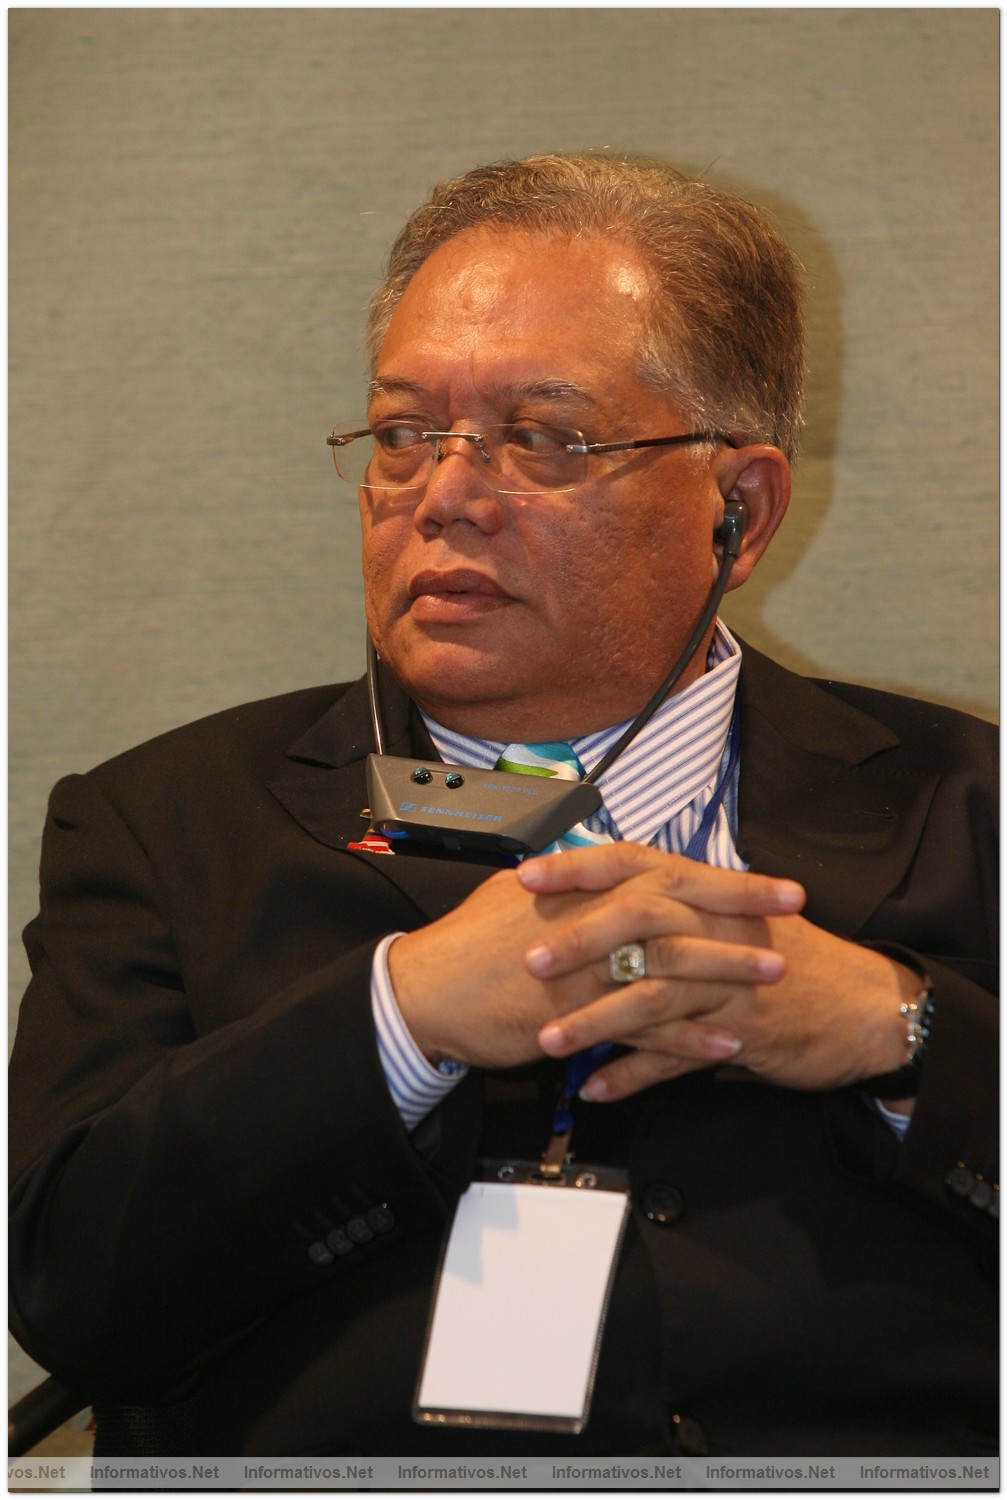 BCN13OCT010.- Presentación del patrimonio creativo del Estado de Terengganu (Malasia): Dato Mohamed Awang Tera, Presidente de Desarrollo Rural  de  empresarios y cooperativas del Estado de Terengganu